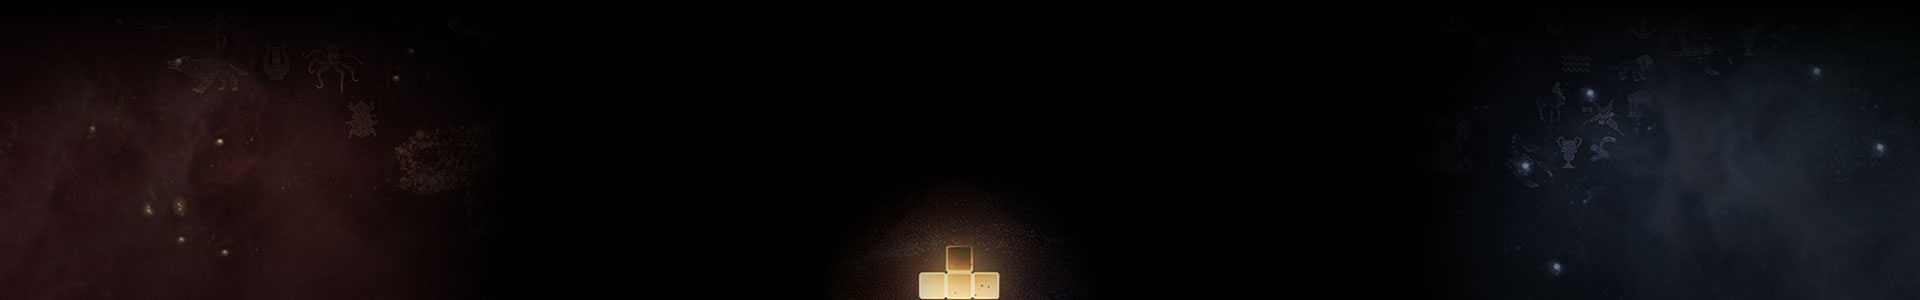 Uma peça de Tetris brilhante entre as estrelas.